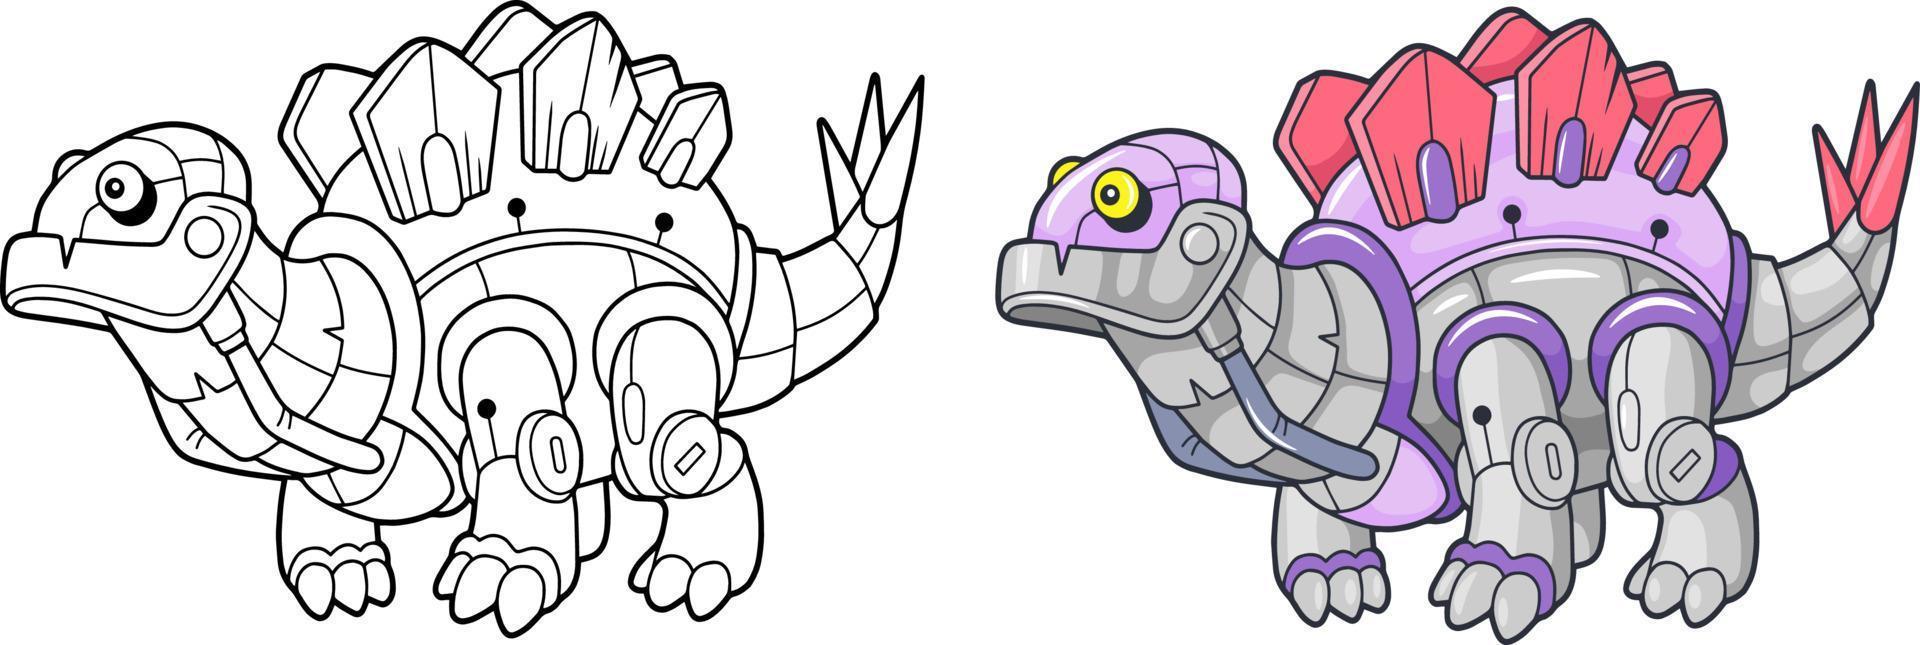 cartoon robot dinosaur stegosaurus, coloring book, funny illustration vector